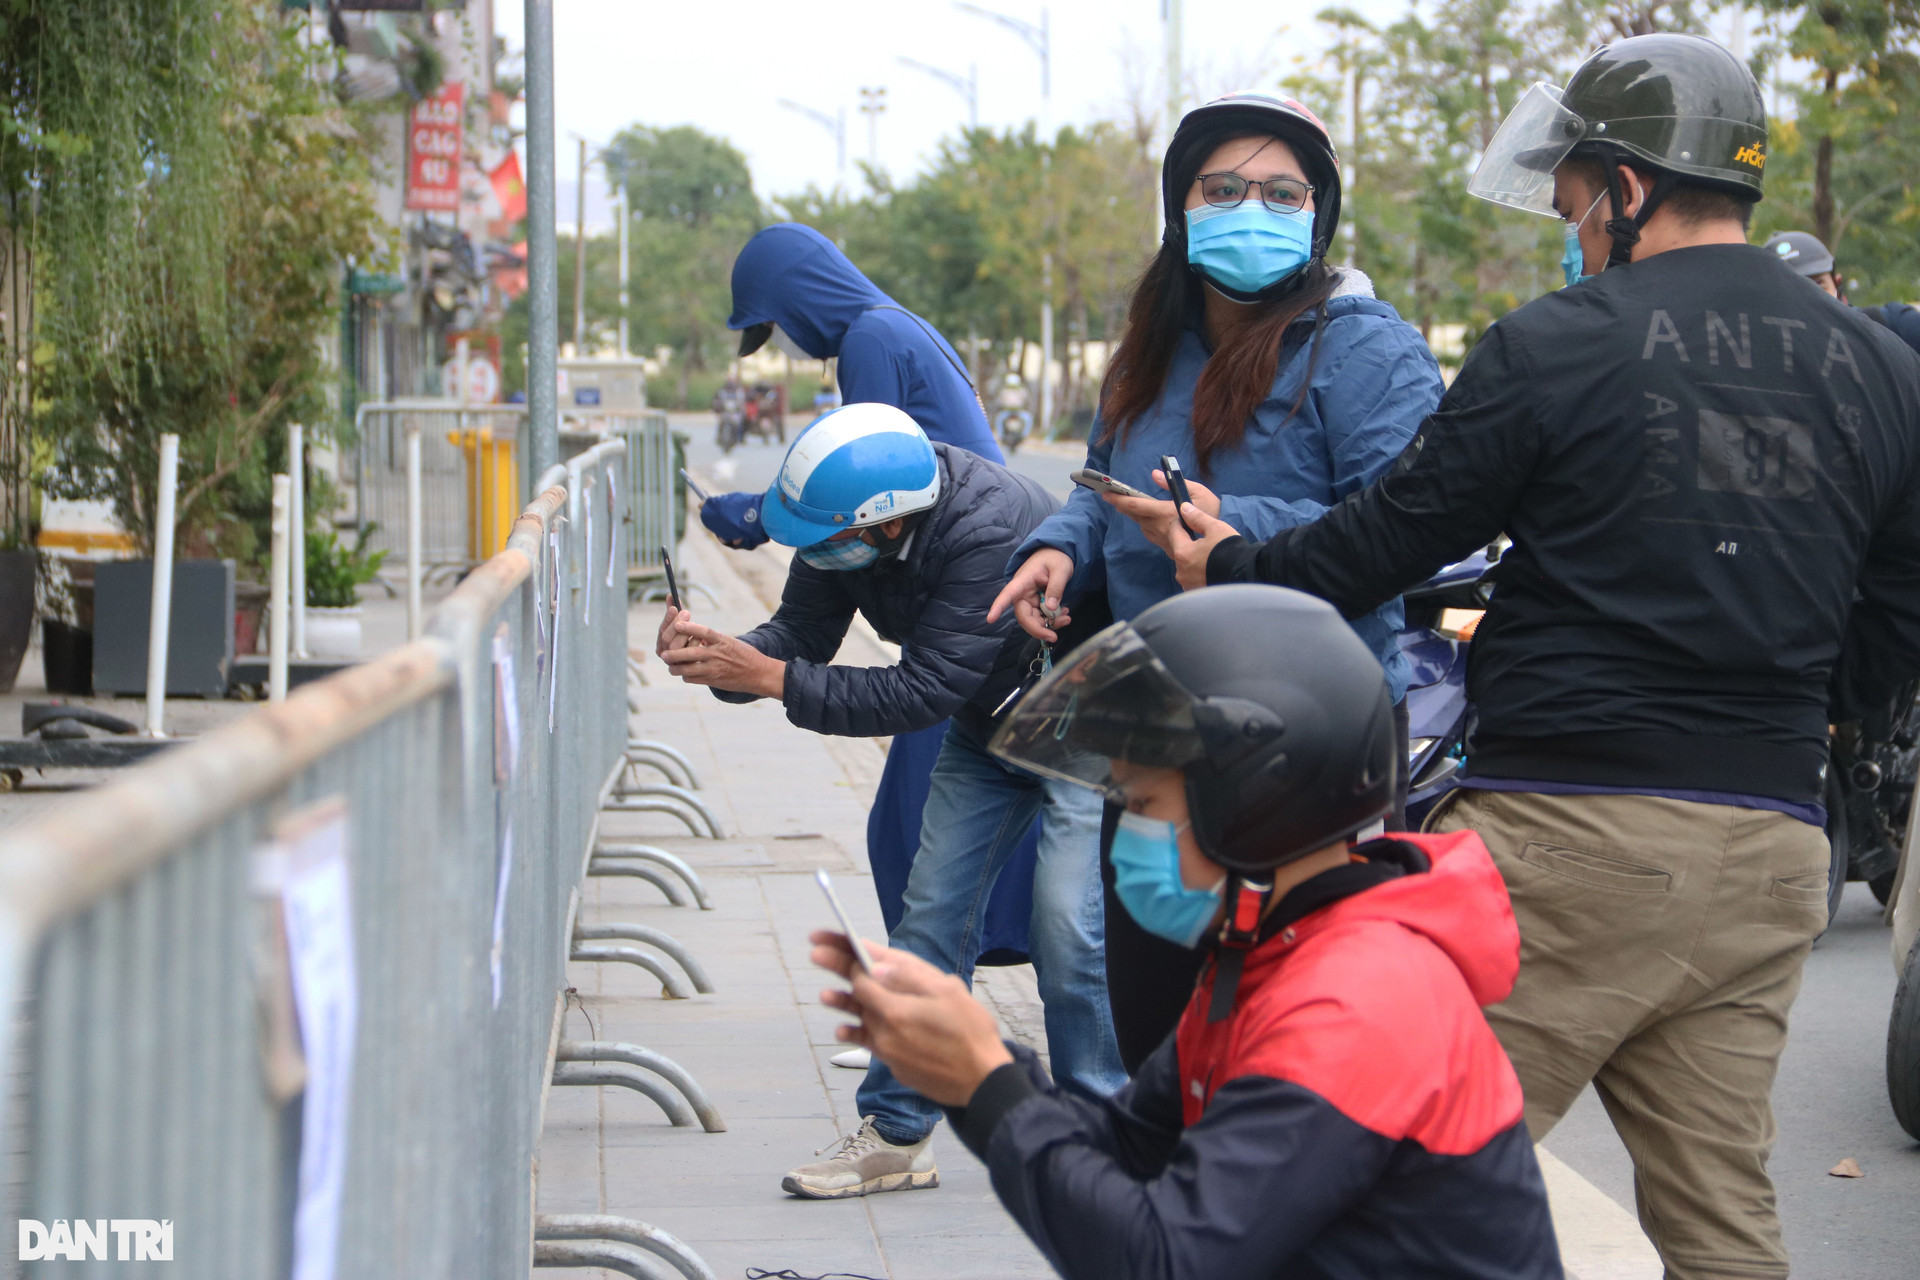 Hà Nội: Đông nghịt người quét QR Code tại ổ dịch Phú Đô - 10